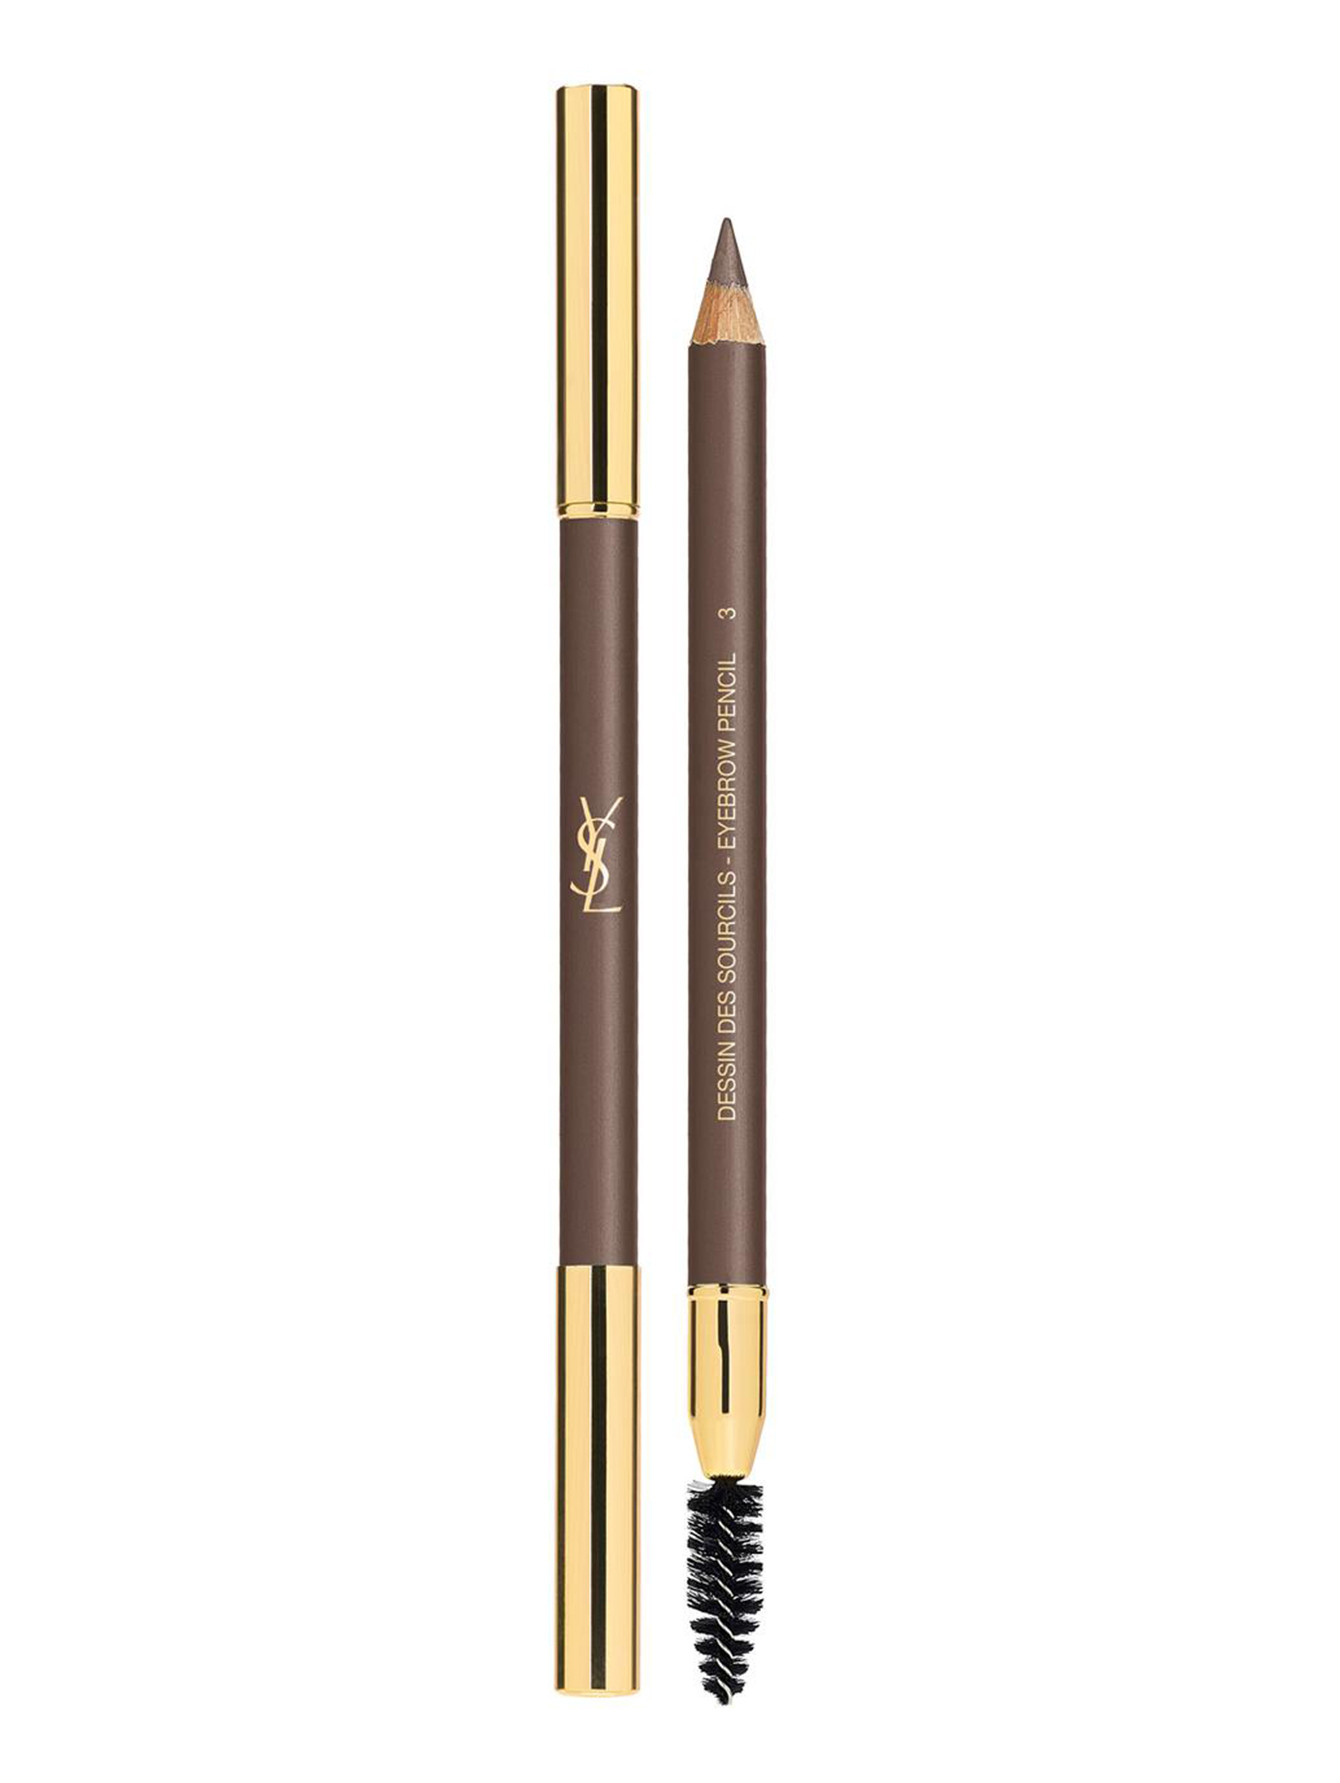 Карандаш для бровей - №3, Eyebrow Pencil - Общий вид